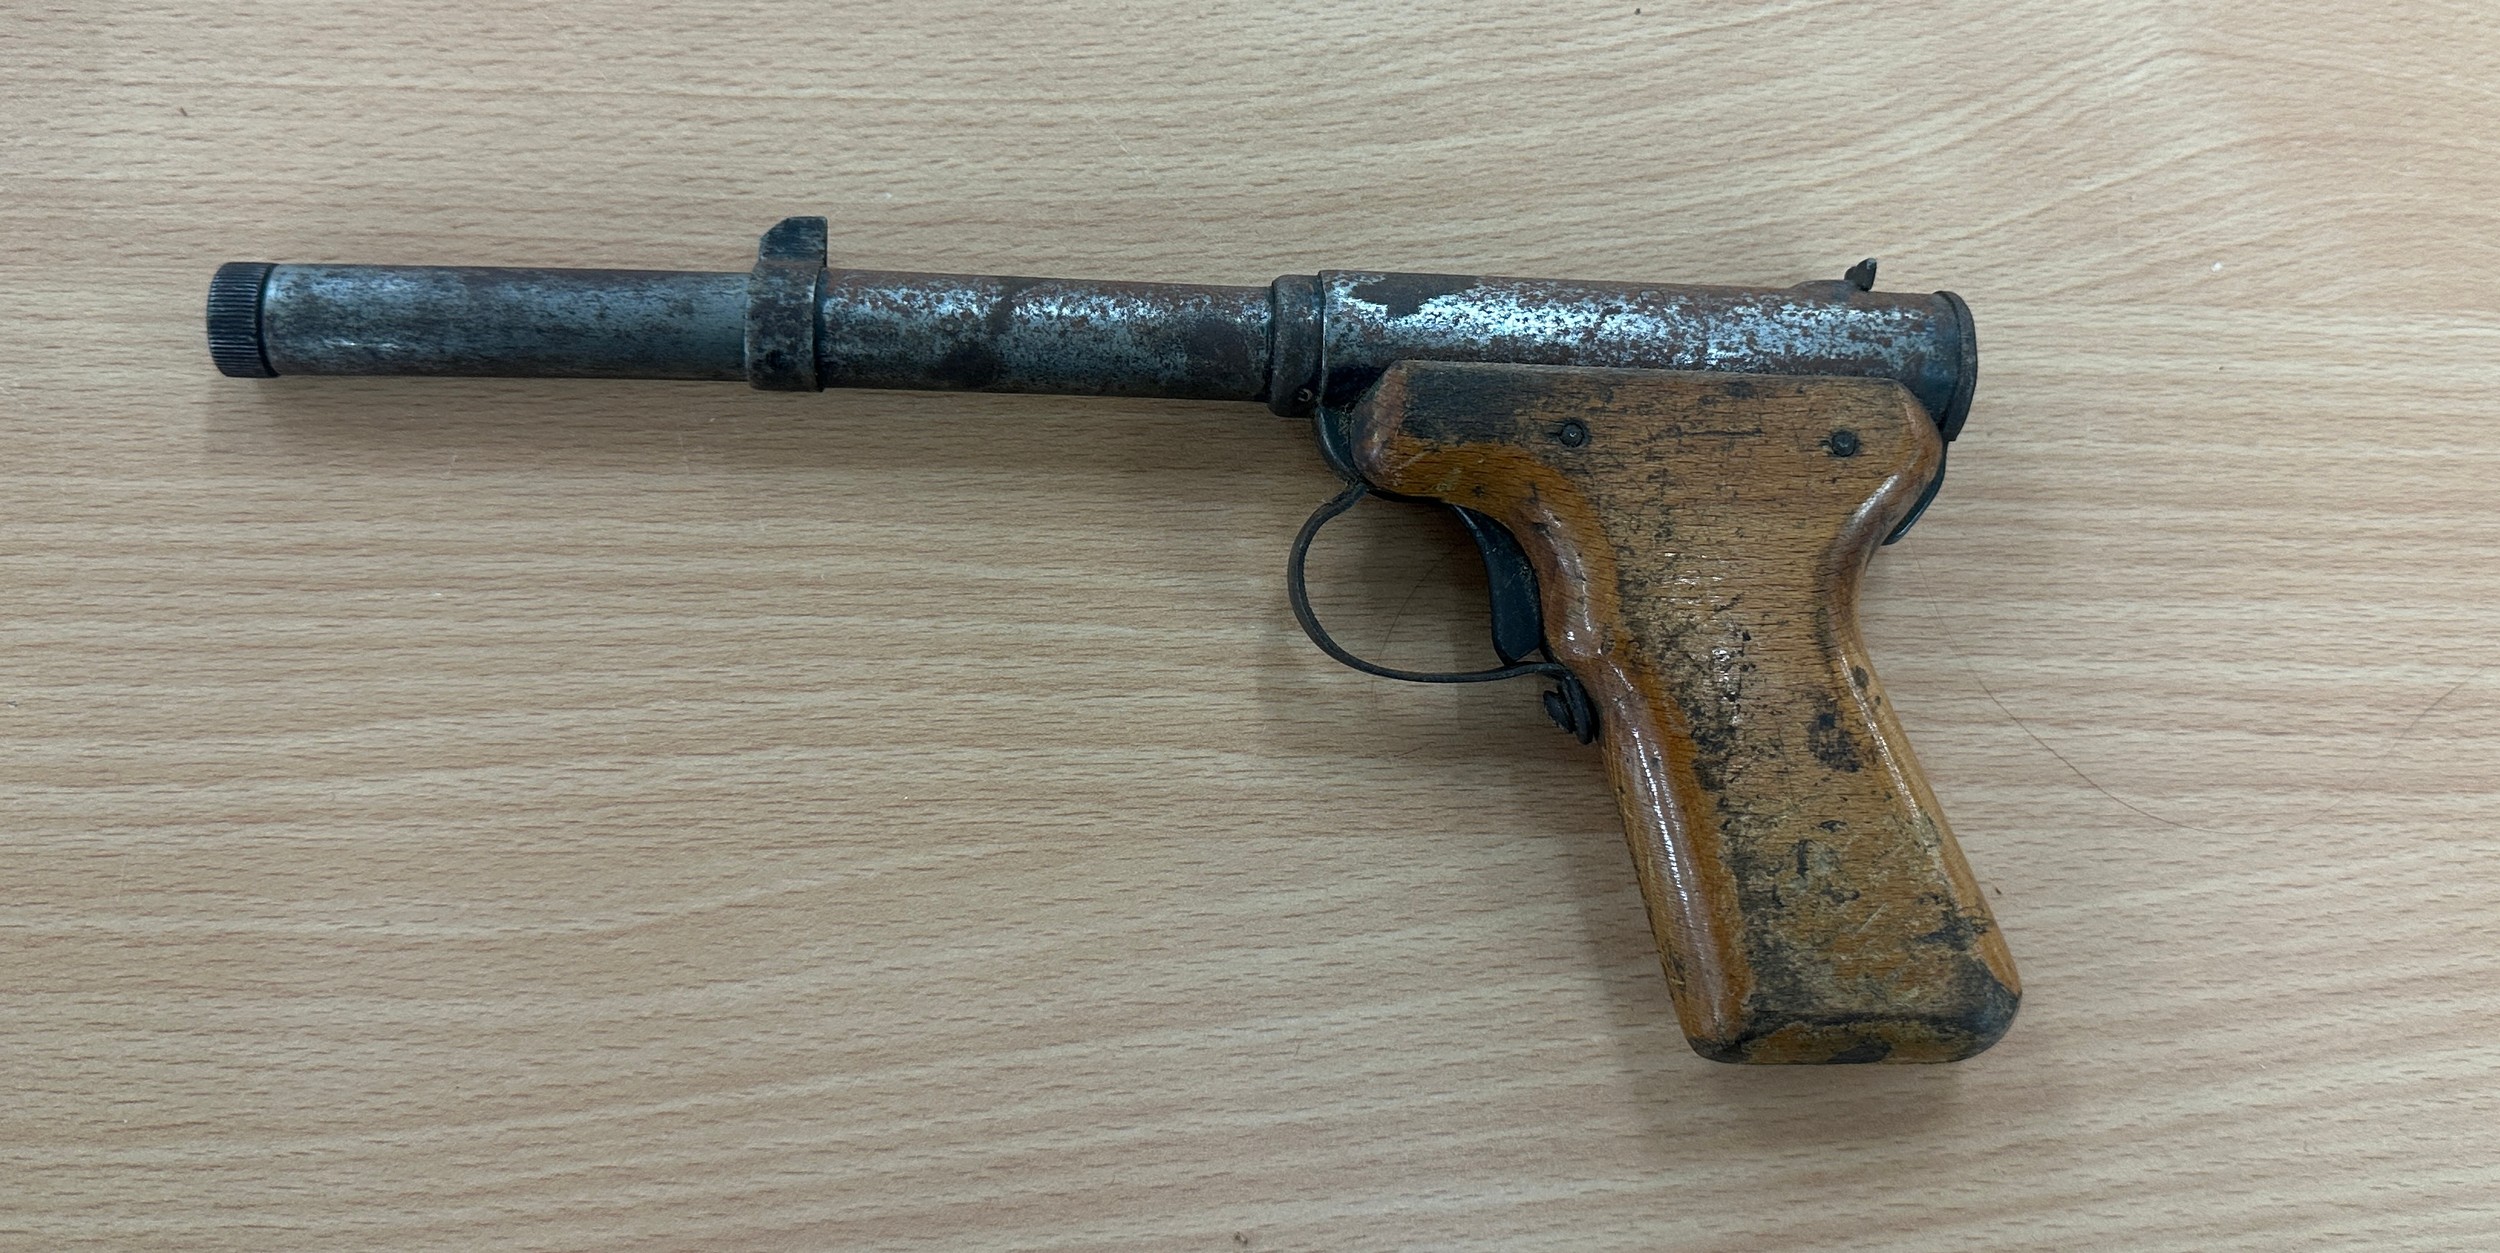 Vintage Britsmale spud gun - Image 2 of 4